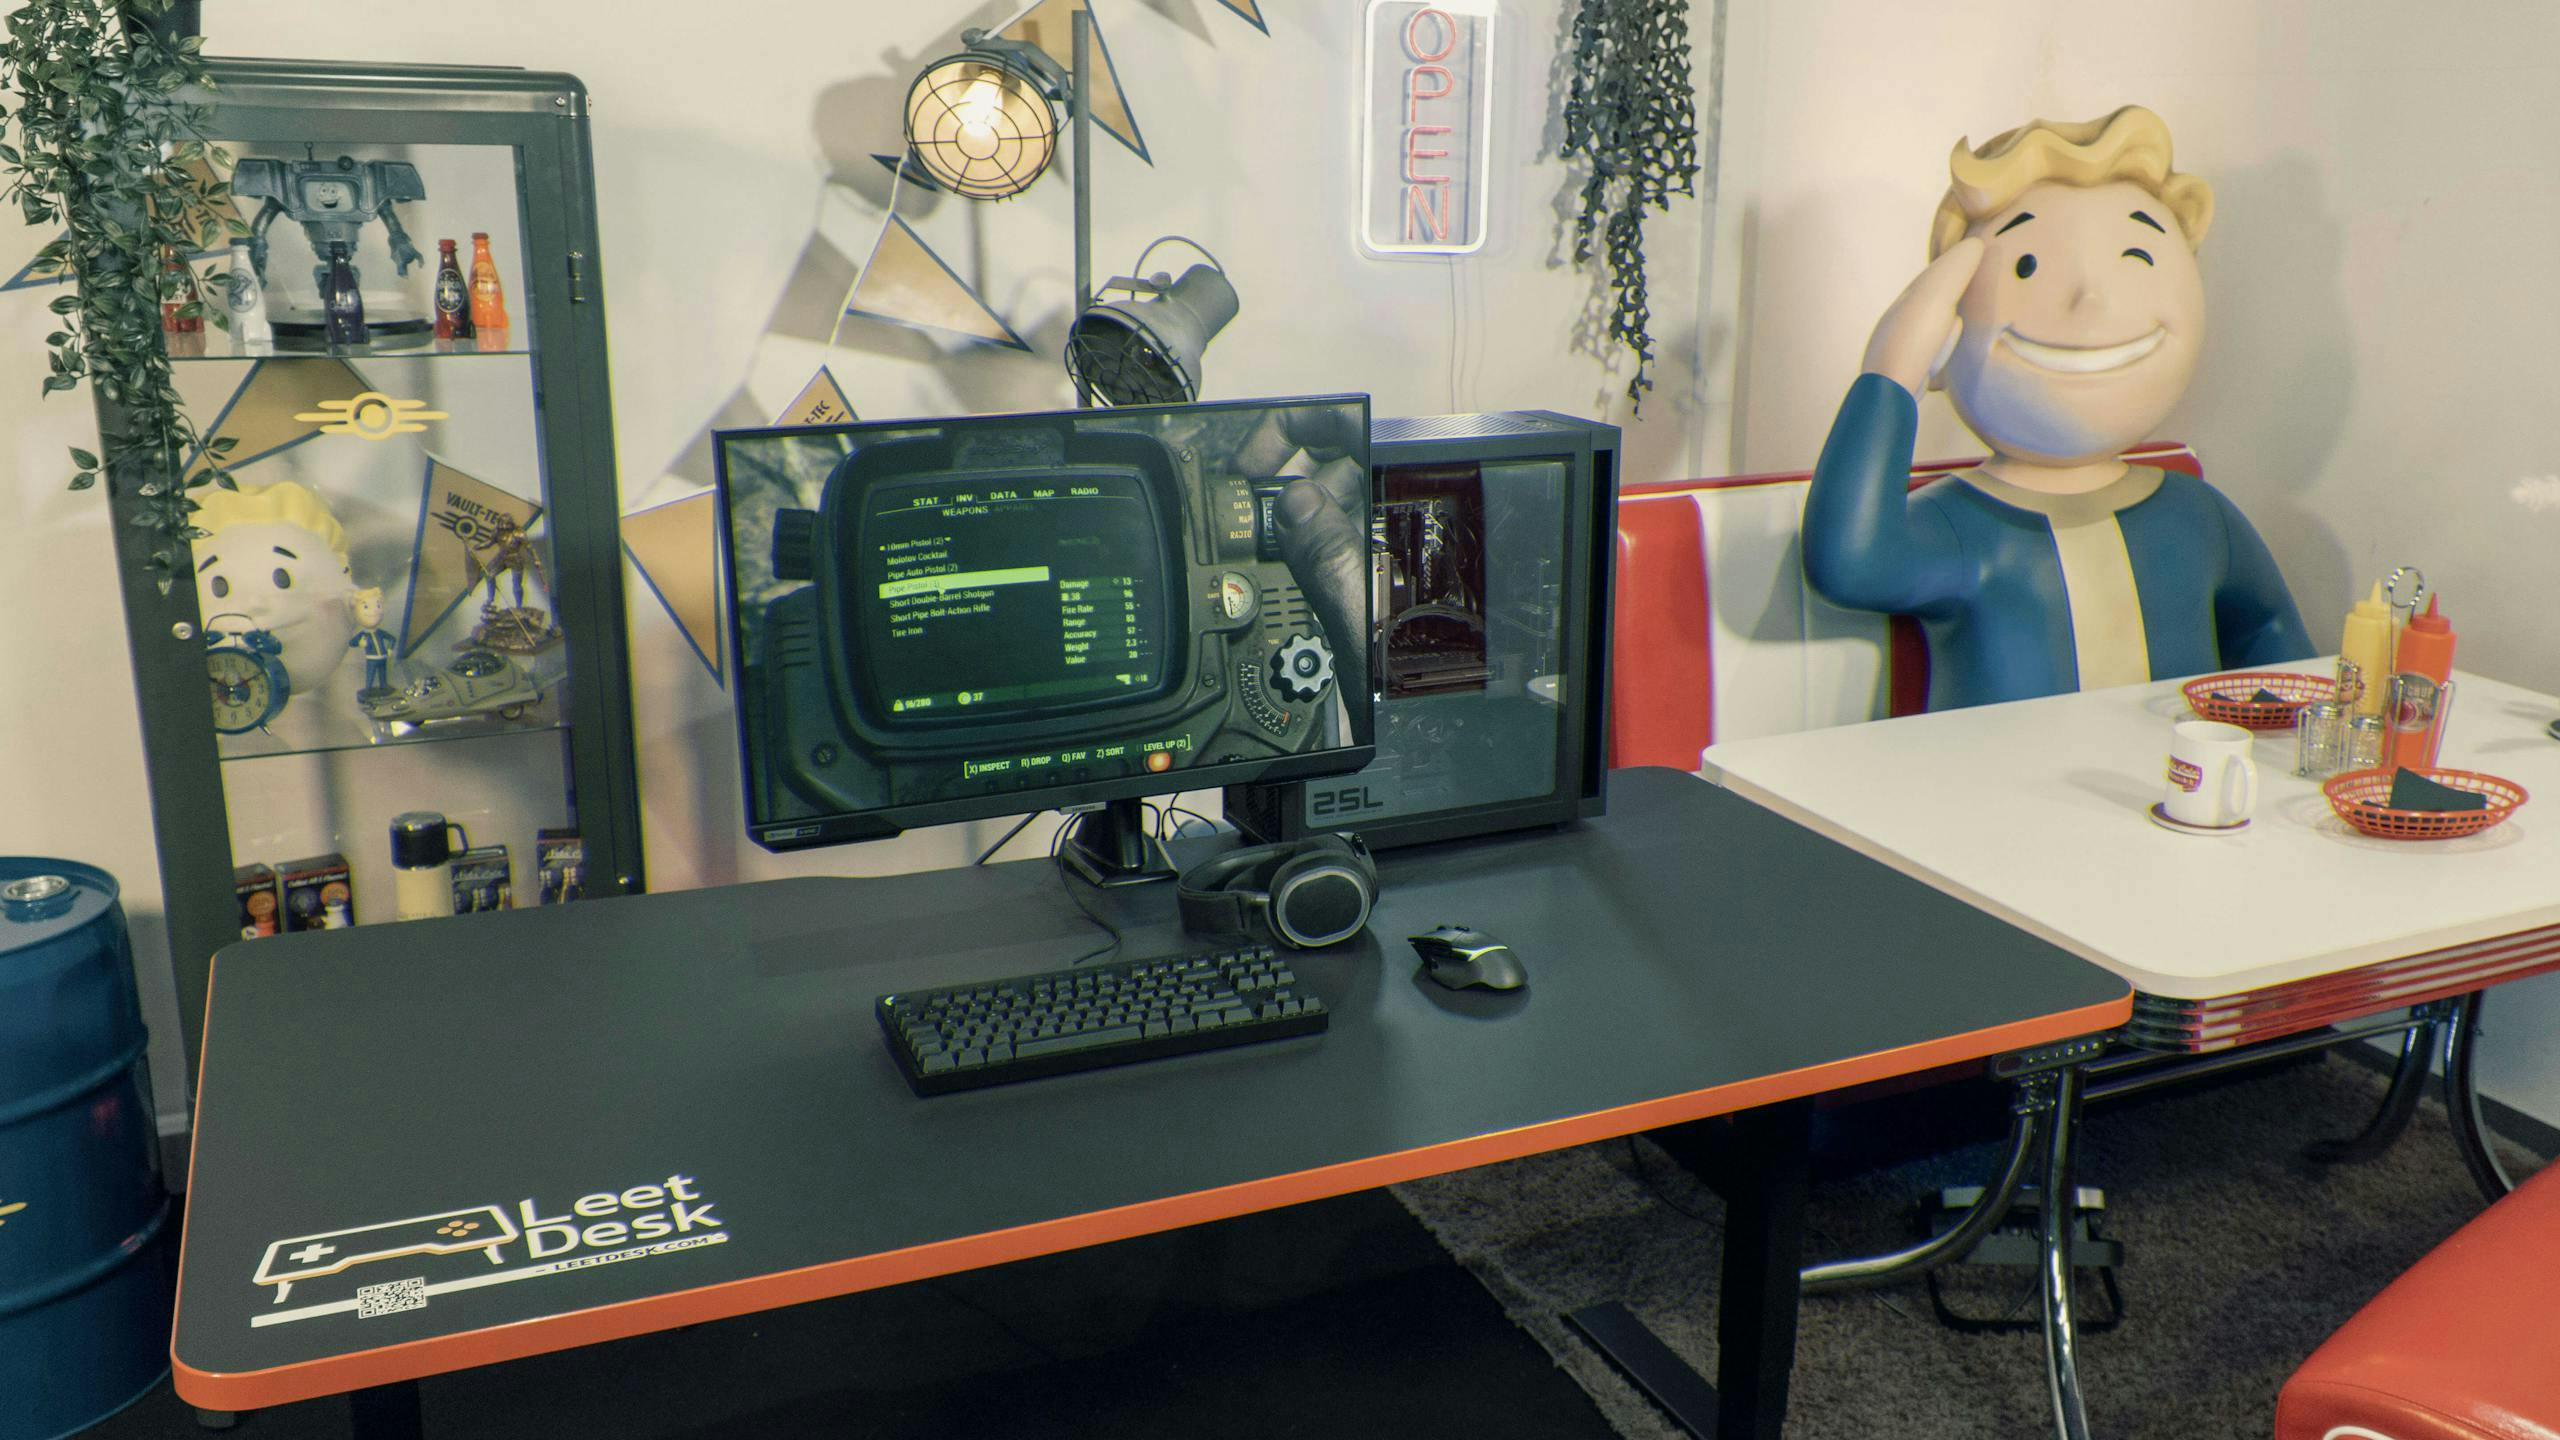 gaming setup im fallout diner stil mit einem leetdesk gaming tisch